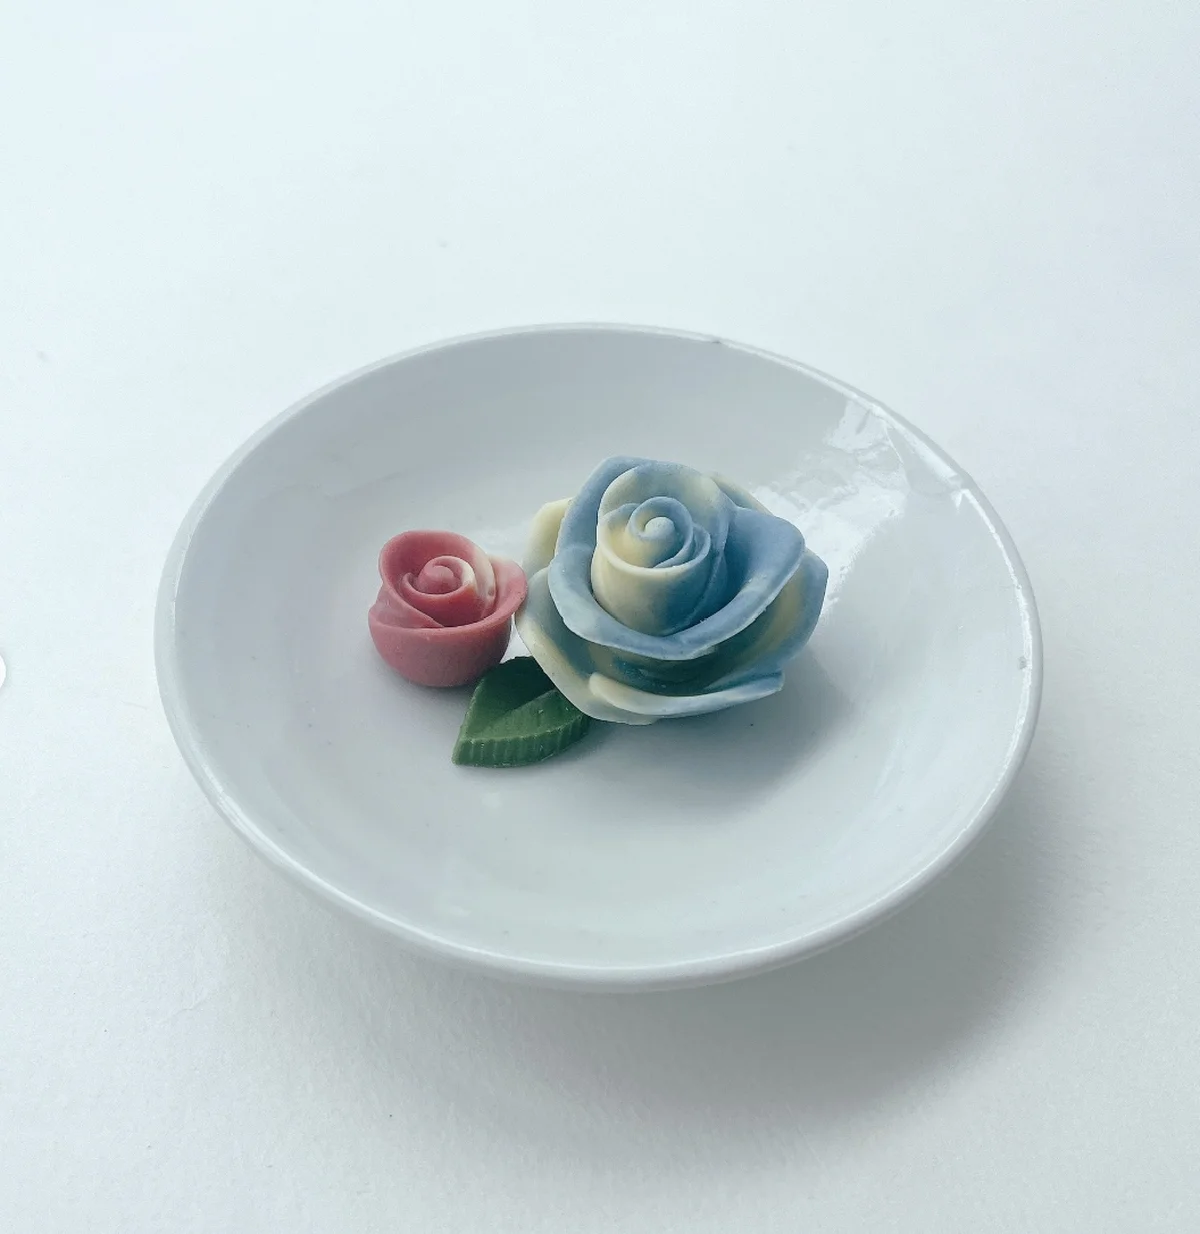 花びら一枚一枚繊細に作られたバラのチョコレートにうっとり。 色合いも美しく、こちらはリナブルーマーブルの薔薇に、イチゴマーブルのつぼみ。